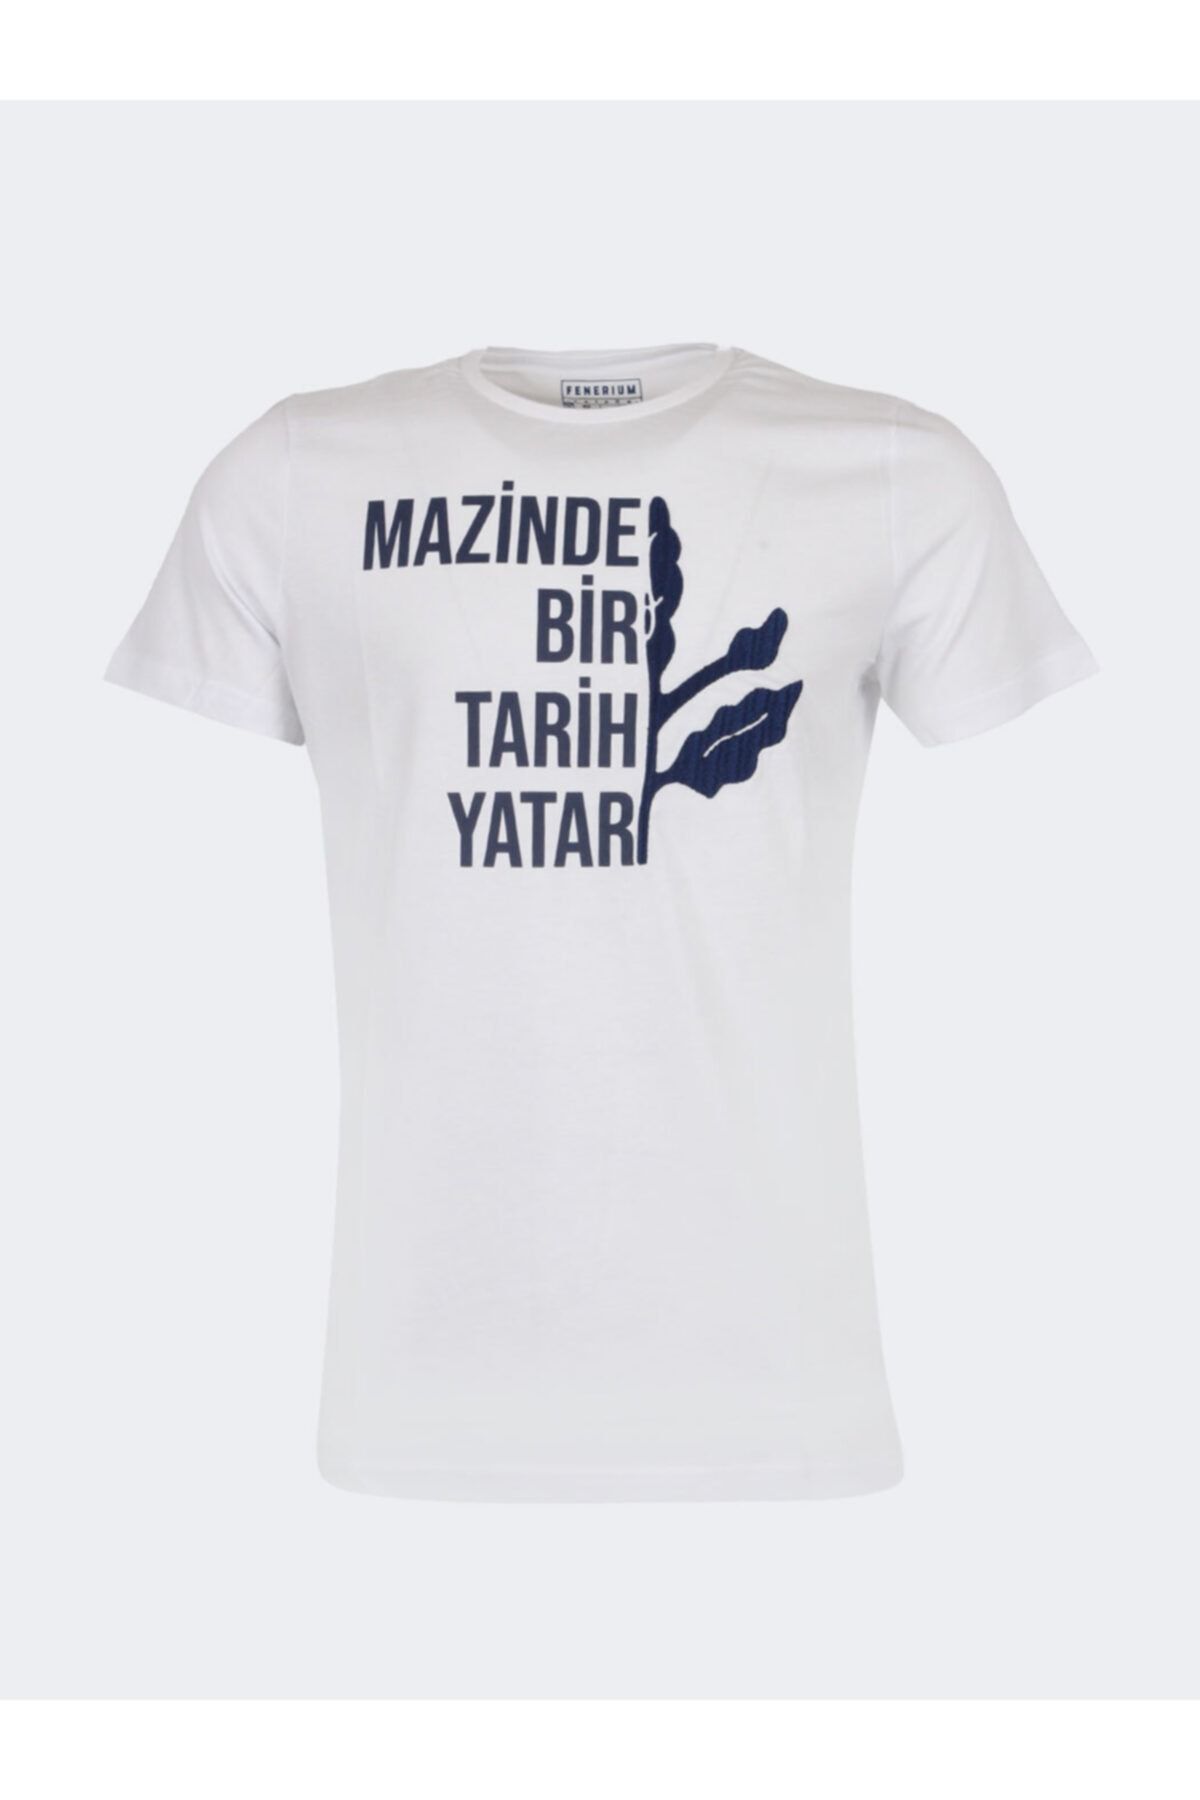 Fenerbahçe Erkek Tribün Mazi T-shırt